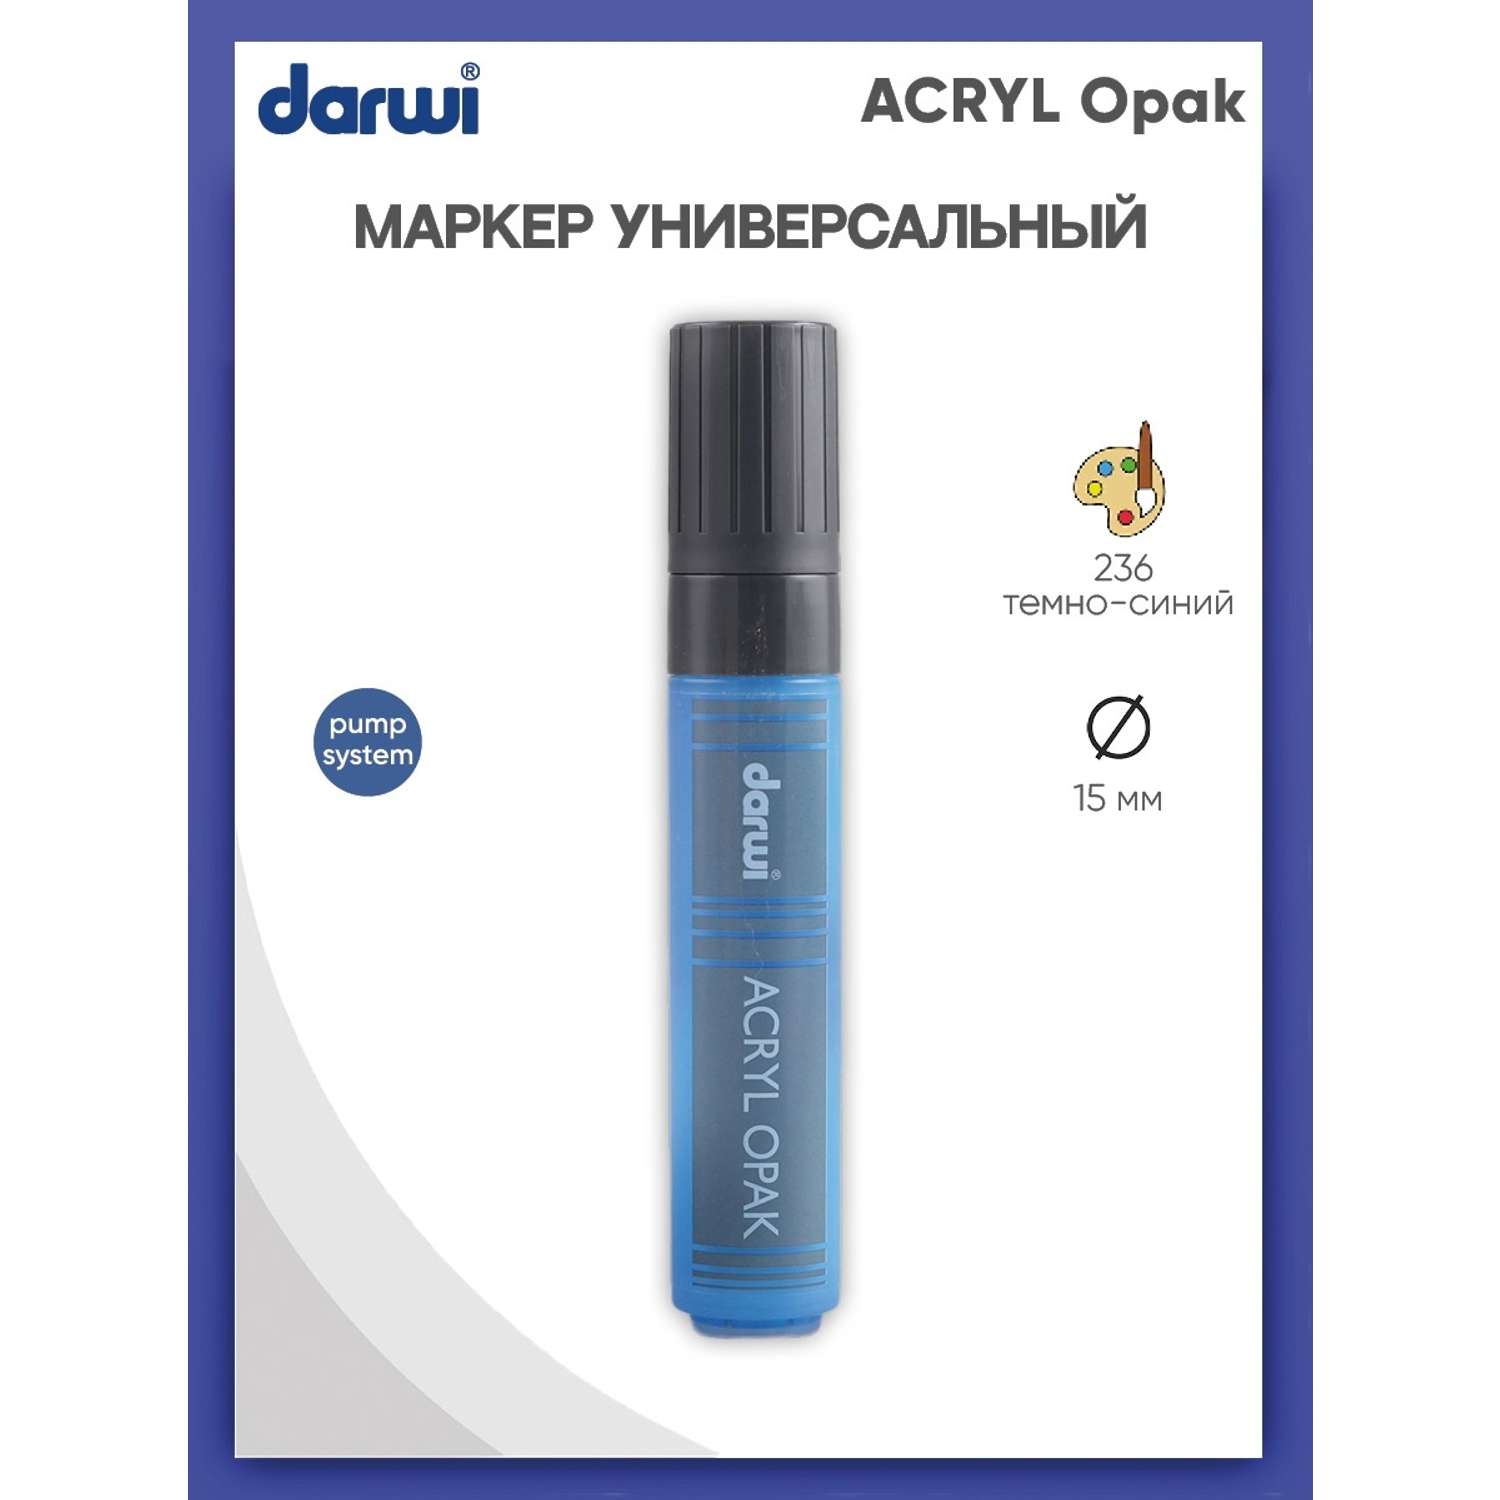 Маркер Darwi акриловый ACRYL Opak DA0220015 15 мм 236 темно - синий - фото 1